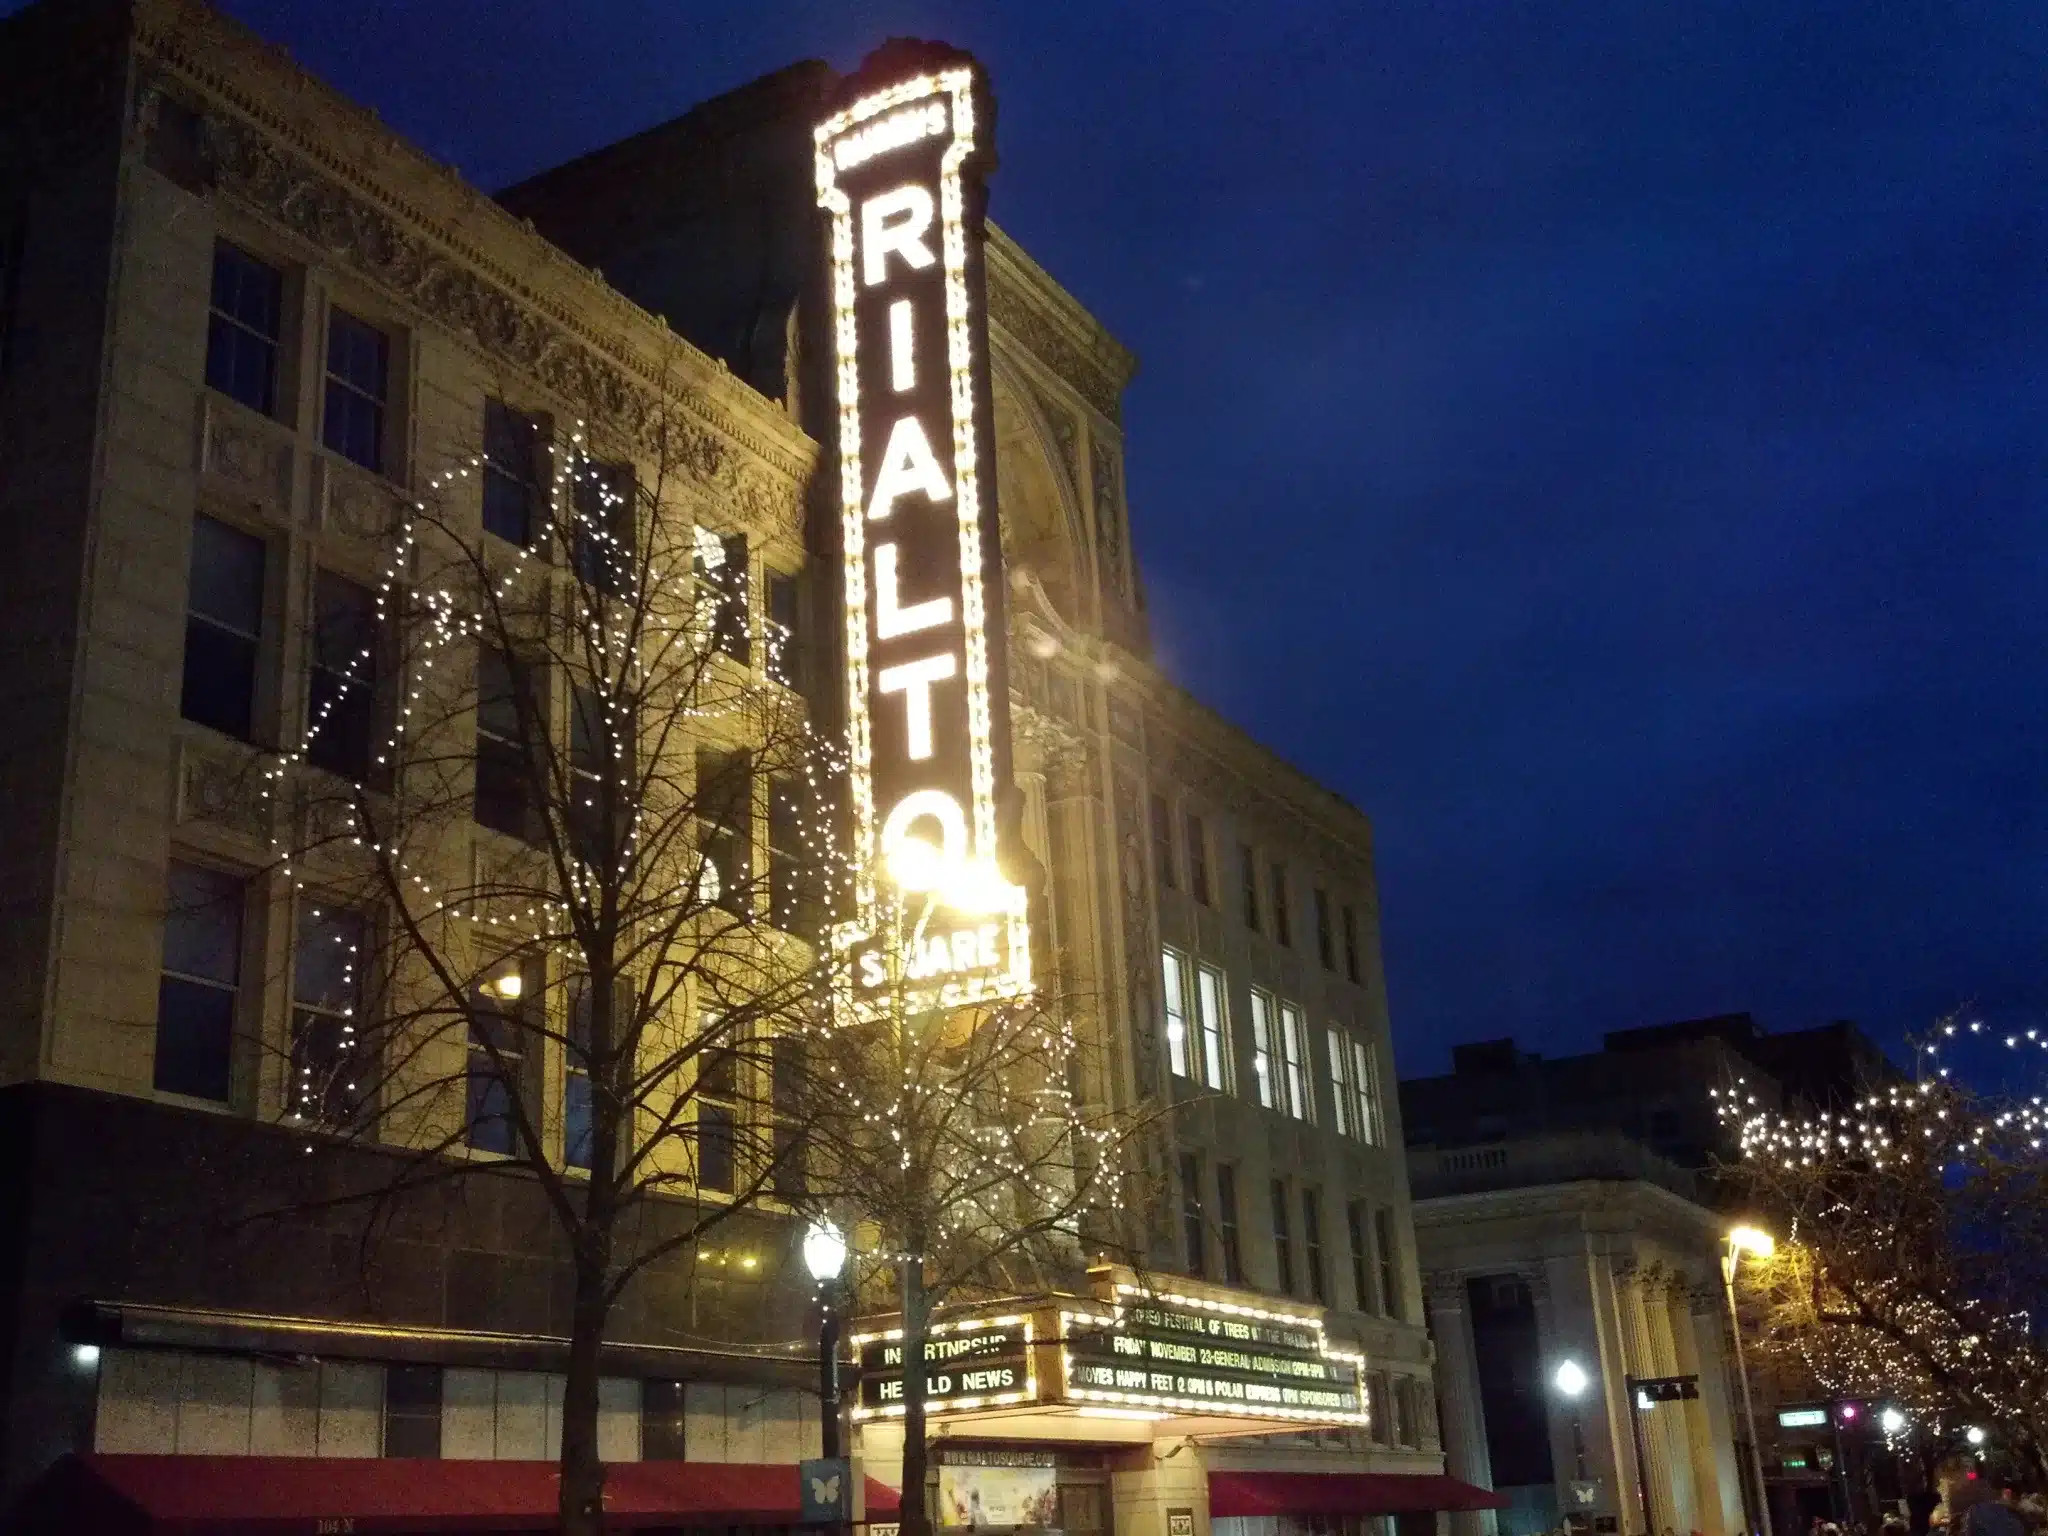 Rialto Square Theatre in Joliet